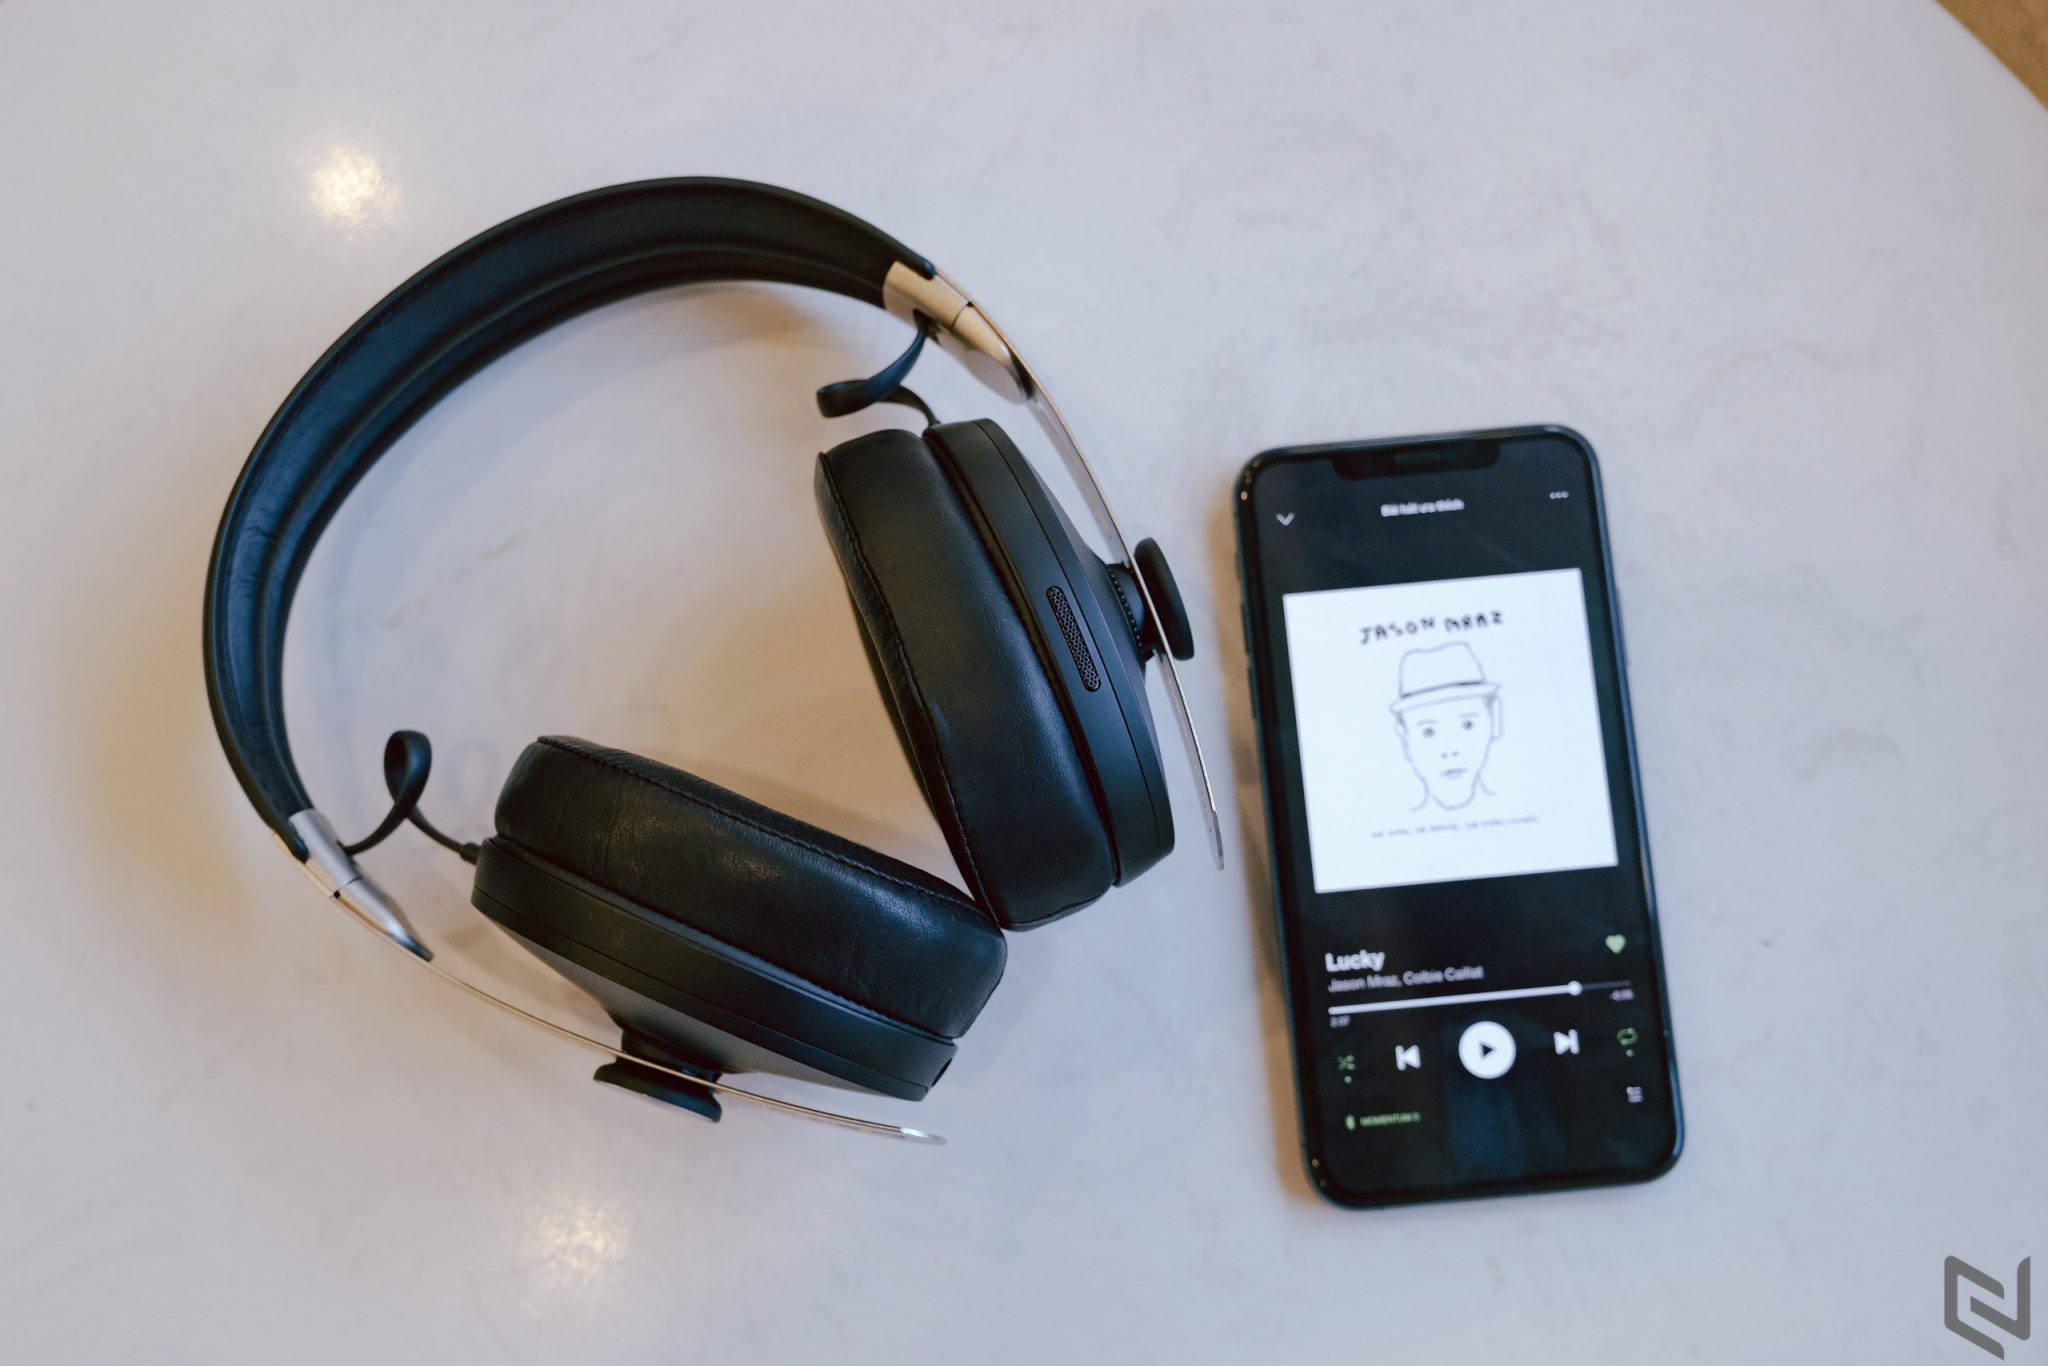 Đánh giá tai nghe Sennheiser Momentum Wireless: Xứng đáng với mức giá gần 11 triệu đồng